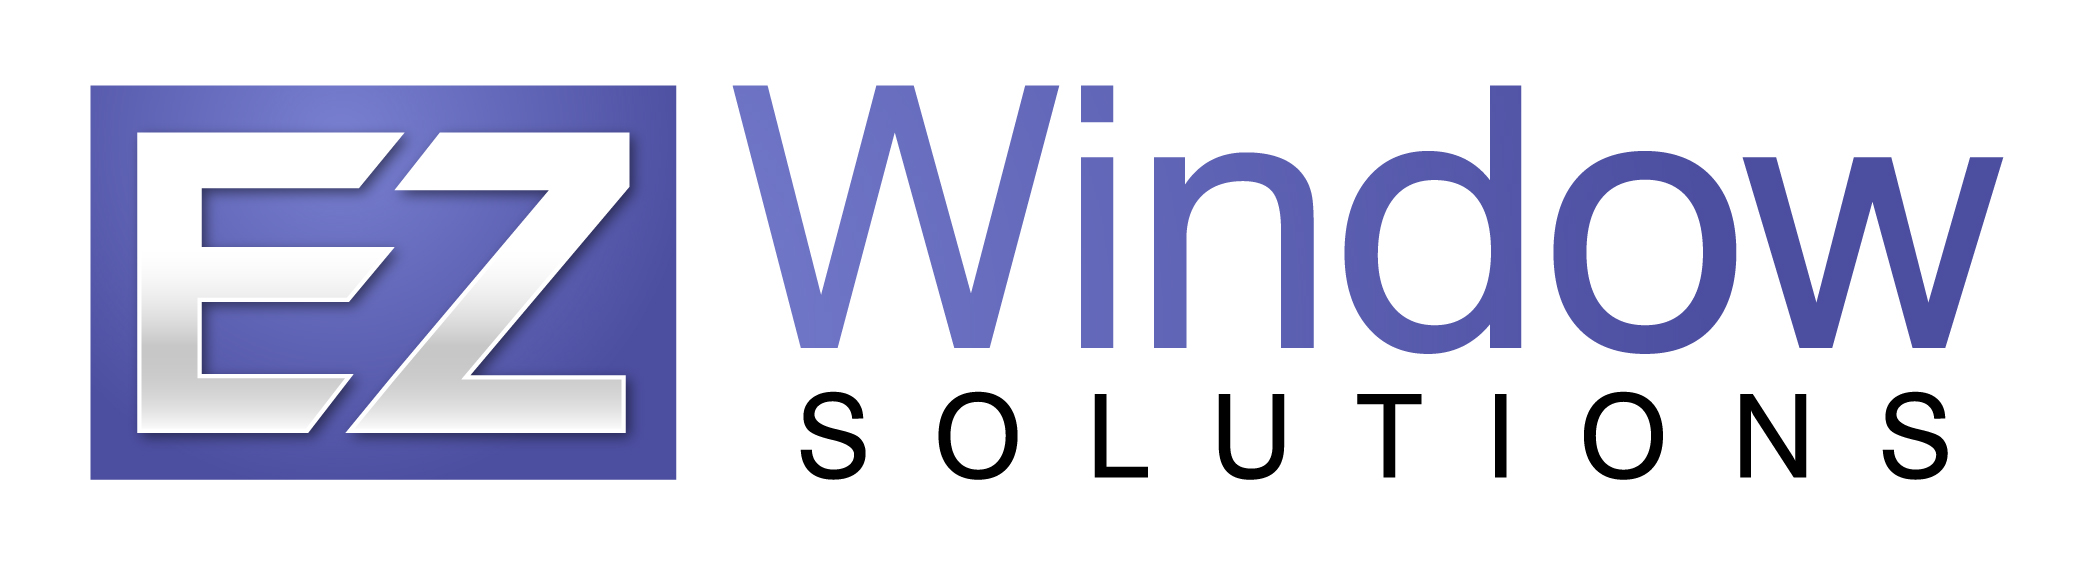 EZ Window Solutions | Replacement Windows and Doors